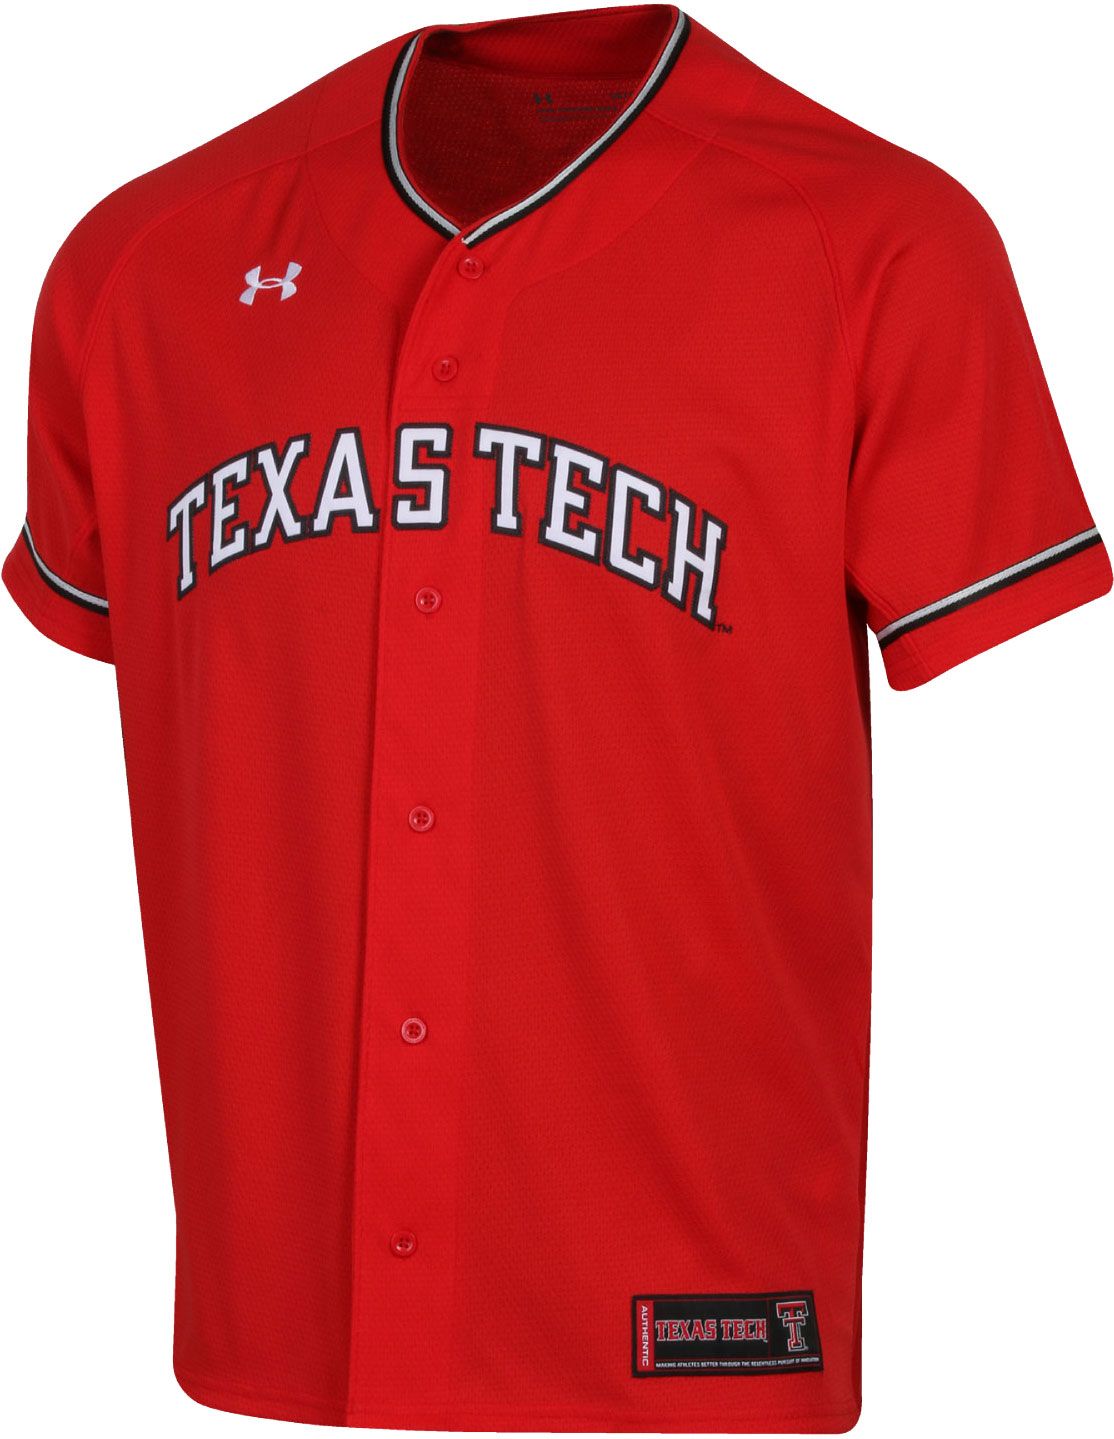 texas tech baseball jersey